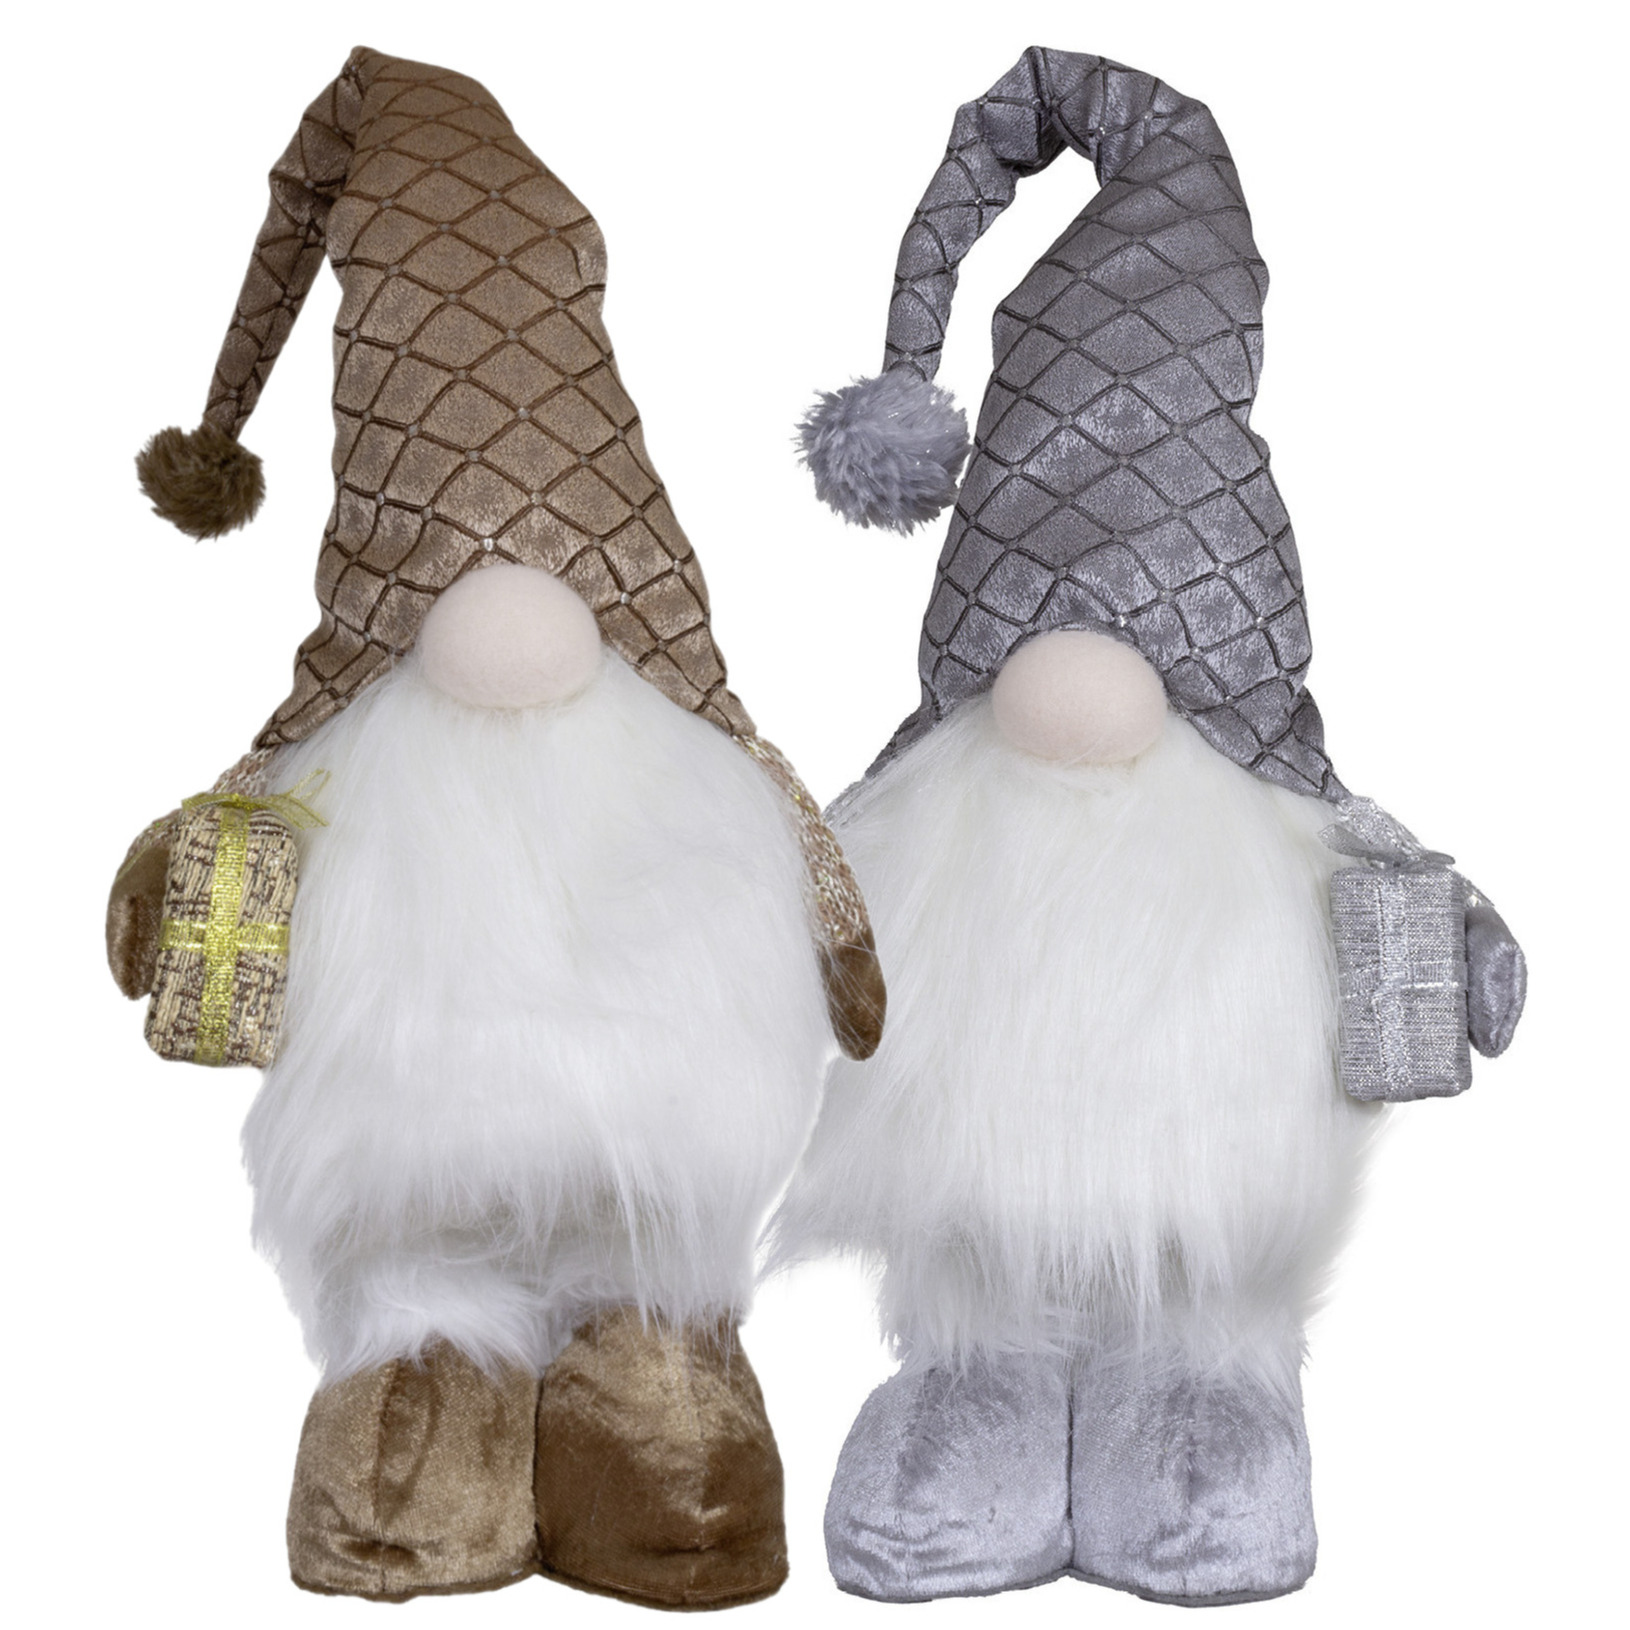 Pluche knuffel gnomes-dwergen 2x st 36 cm zilver en brons -met verlichting